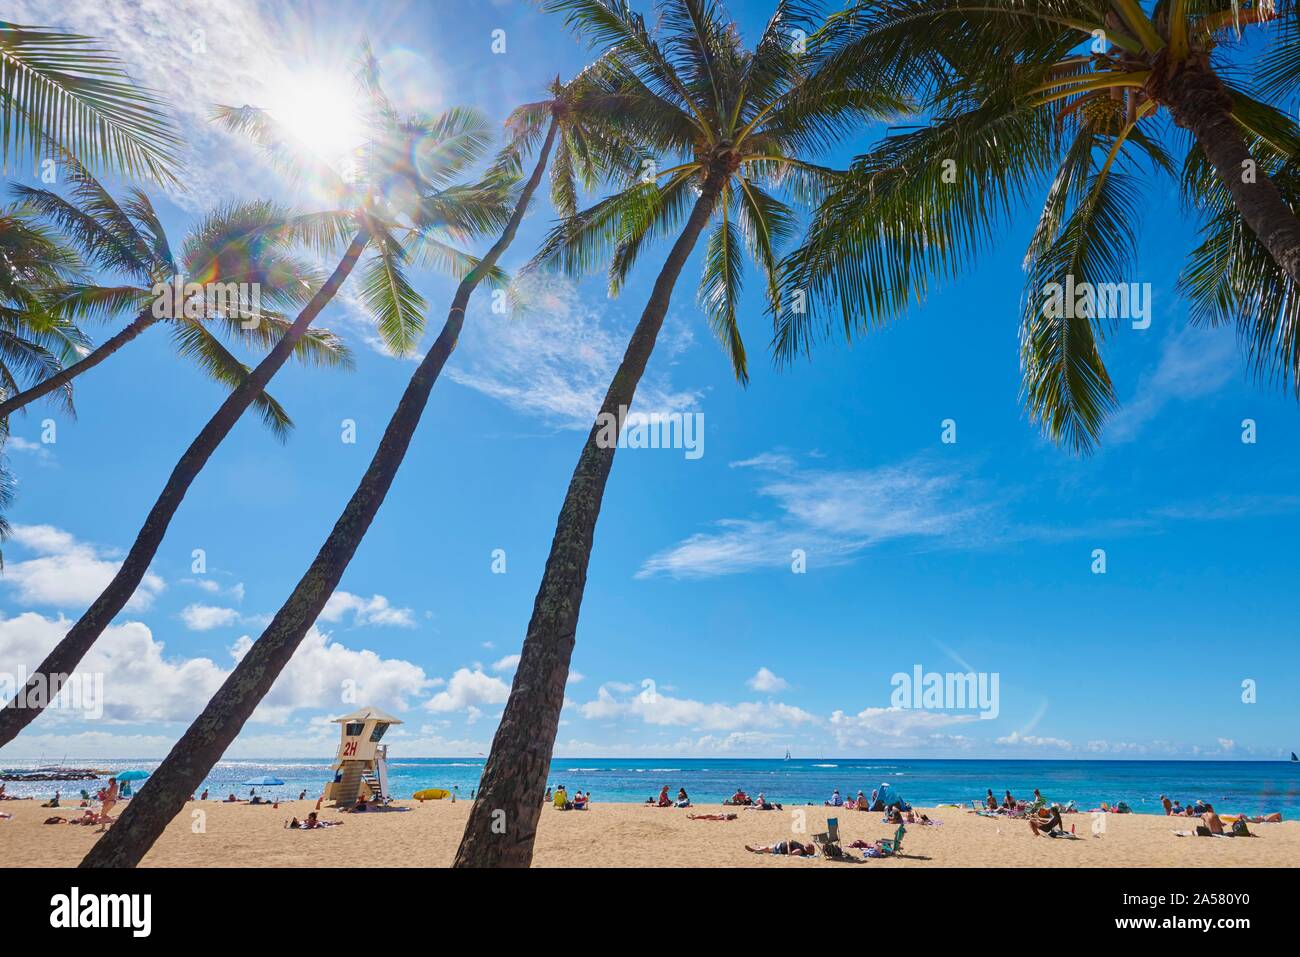 LKuhio Strand, Honolulu, Hawaii Insel Oahu, O'ahu, Hawaii, Aloha State, USA Stockfoto